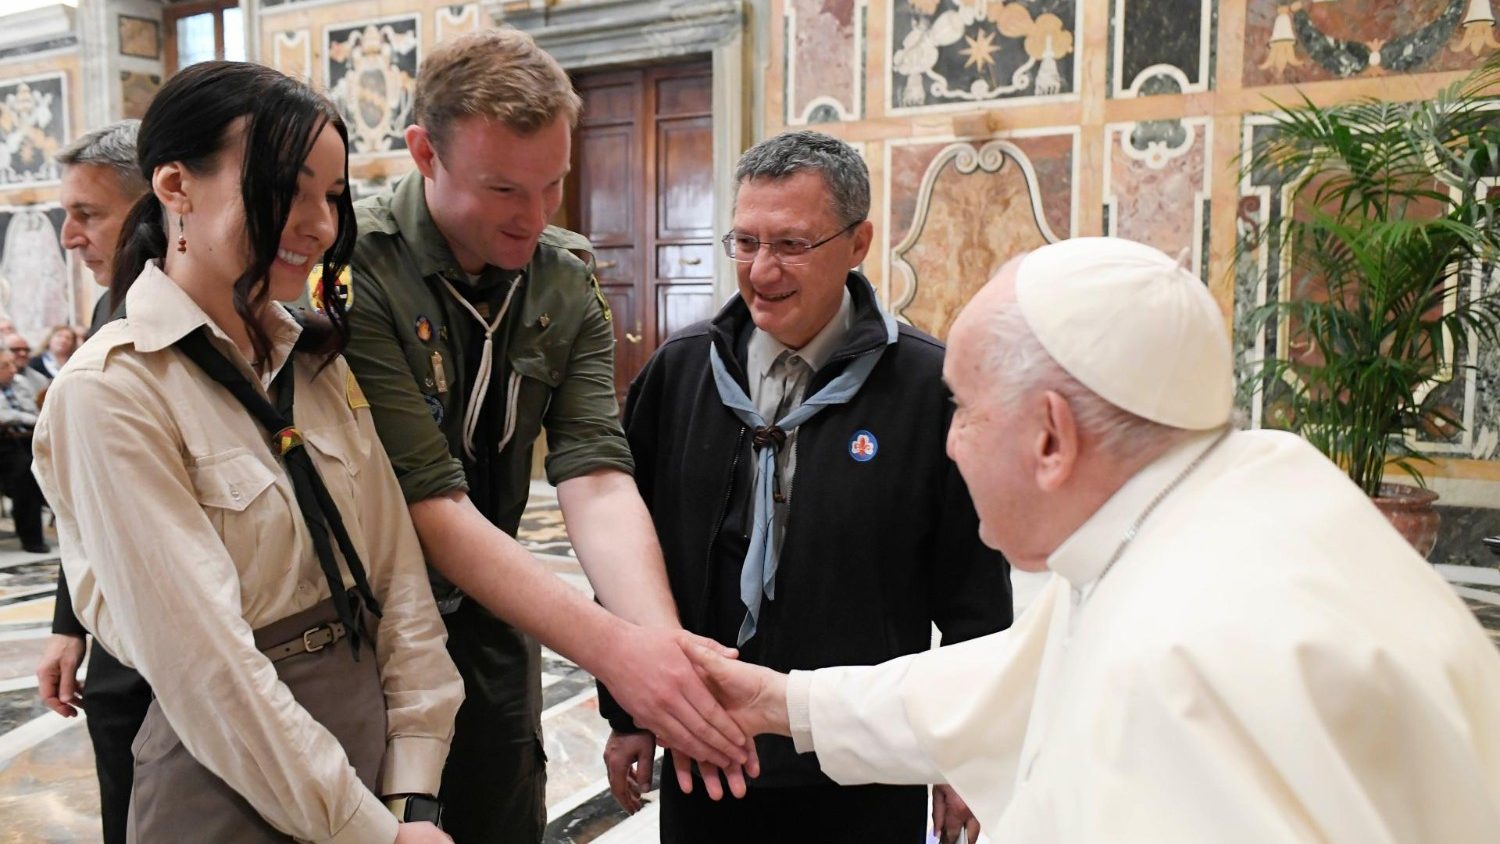 เราต้องปกป้องศักดิ์ศรีของชีวิตมนุษย์ทุกคน (Pope to Italian scouts: ‘We must defend the dignity of all human life’)